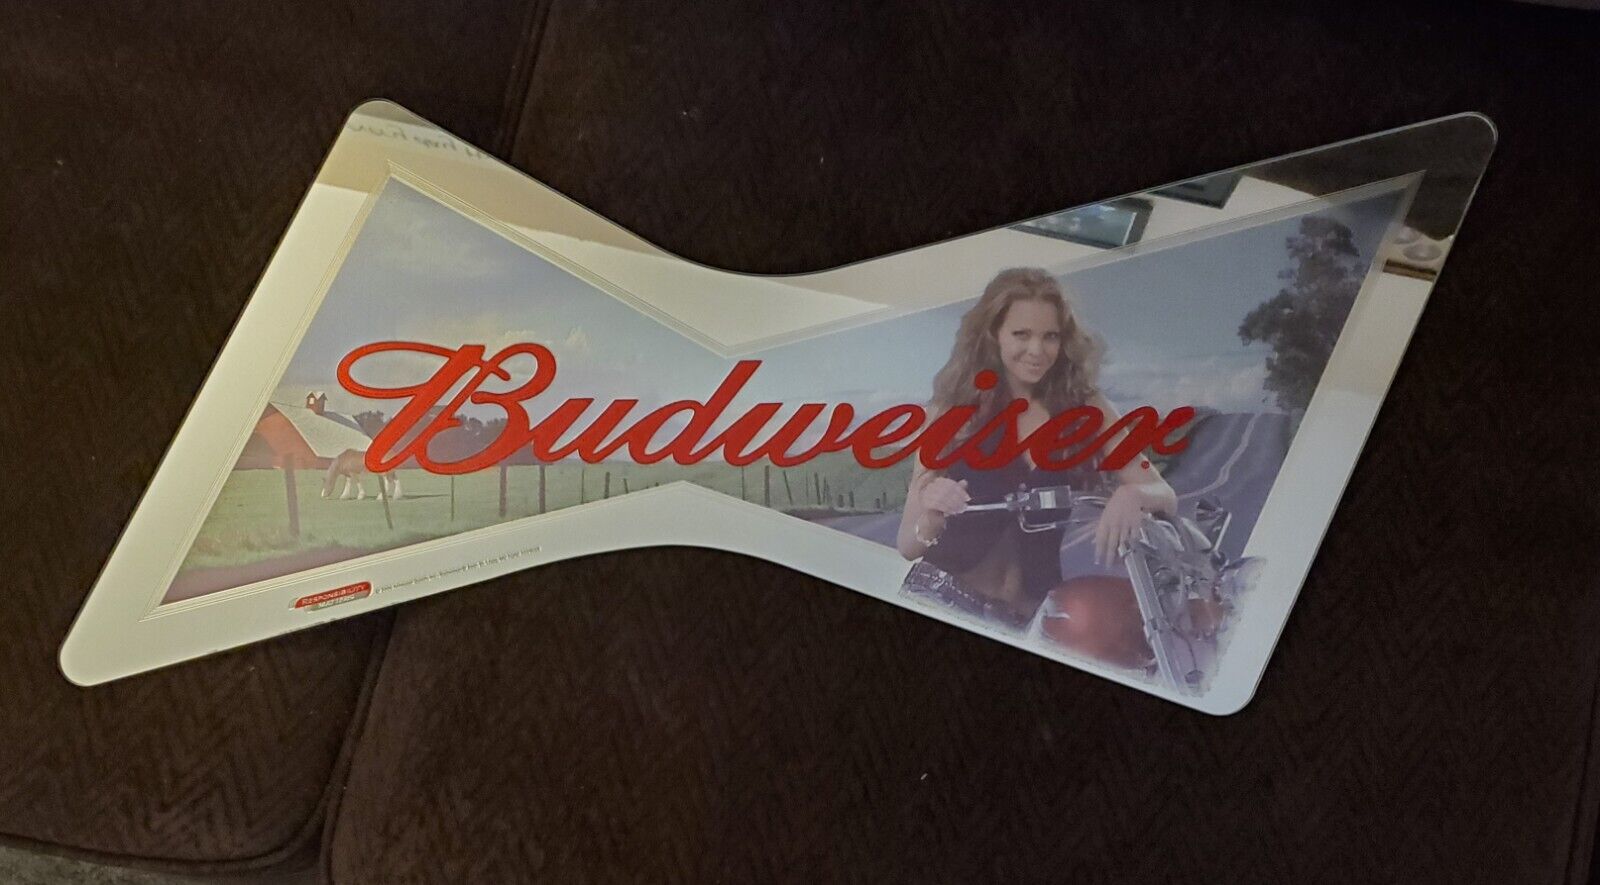 2006 BUDWEISER BUD MOTORCYCLE GIRL BOWTIE MIRROR ADVERTISING BEER SIGN HARLEY HD